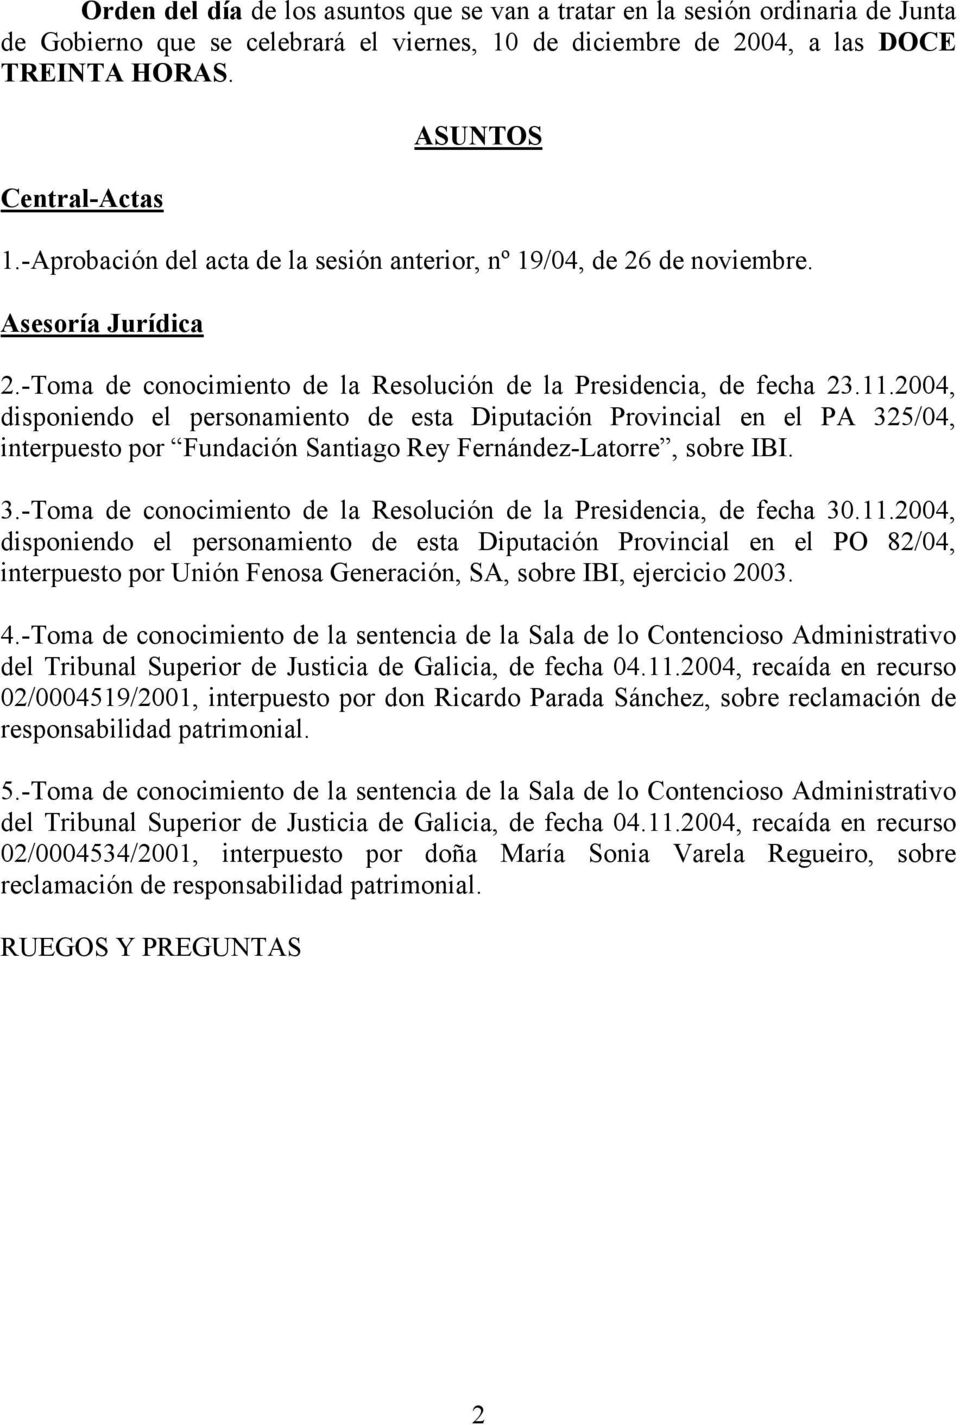 2004, disponiendo el personamiento de esta Diputación Provincial en el PA 325/04, interpuesto por Fundación Santiago Rey Fernández-Latorre, sobre IBI. 3.-Toma de conocimiento de la Resolución de la Presidencia, de fecha 30.